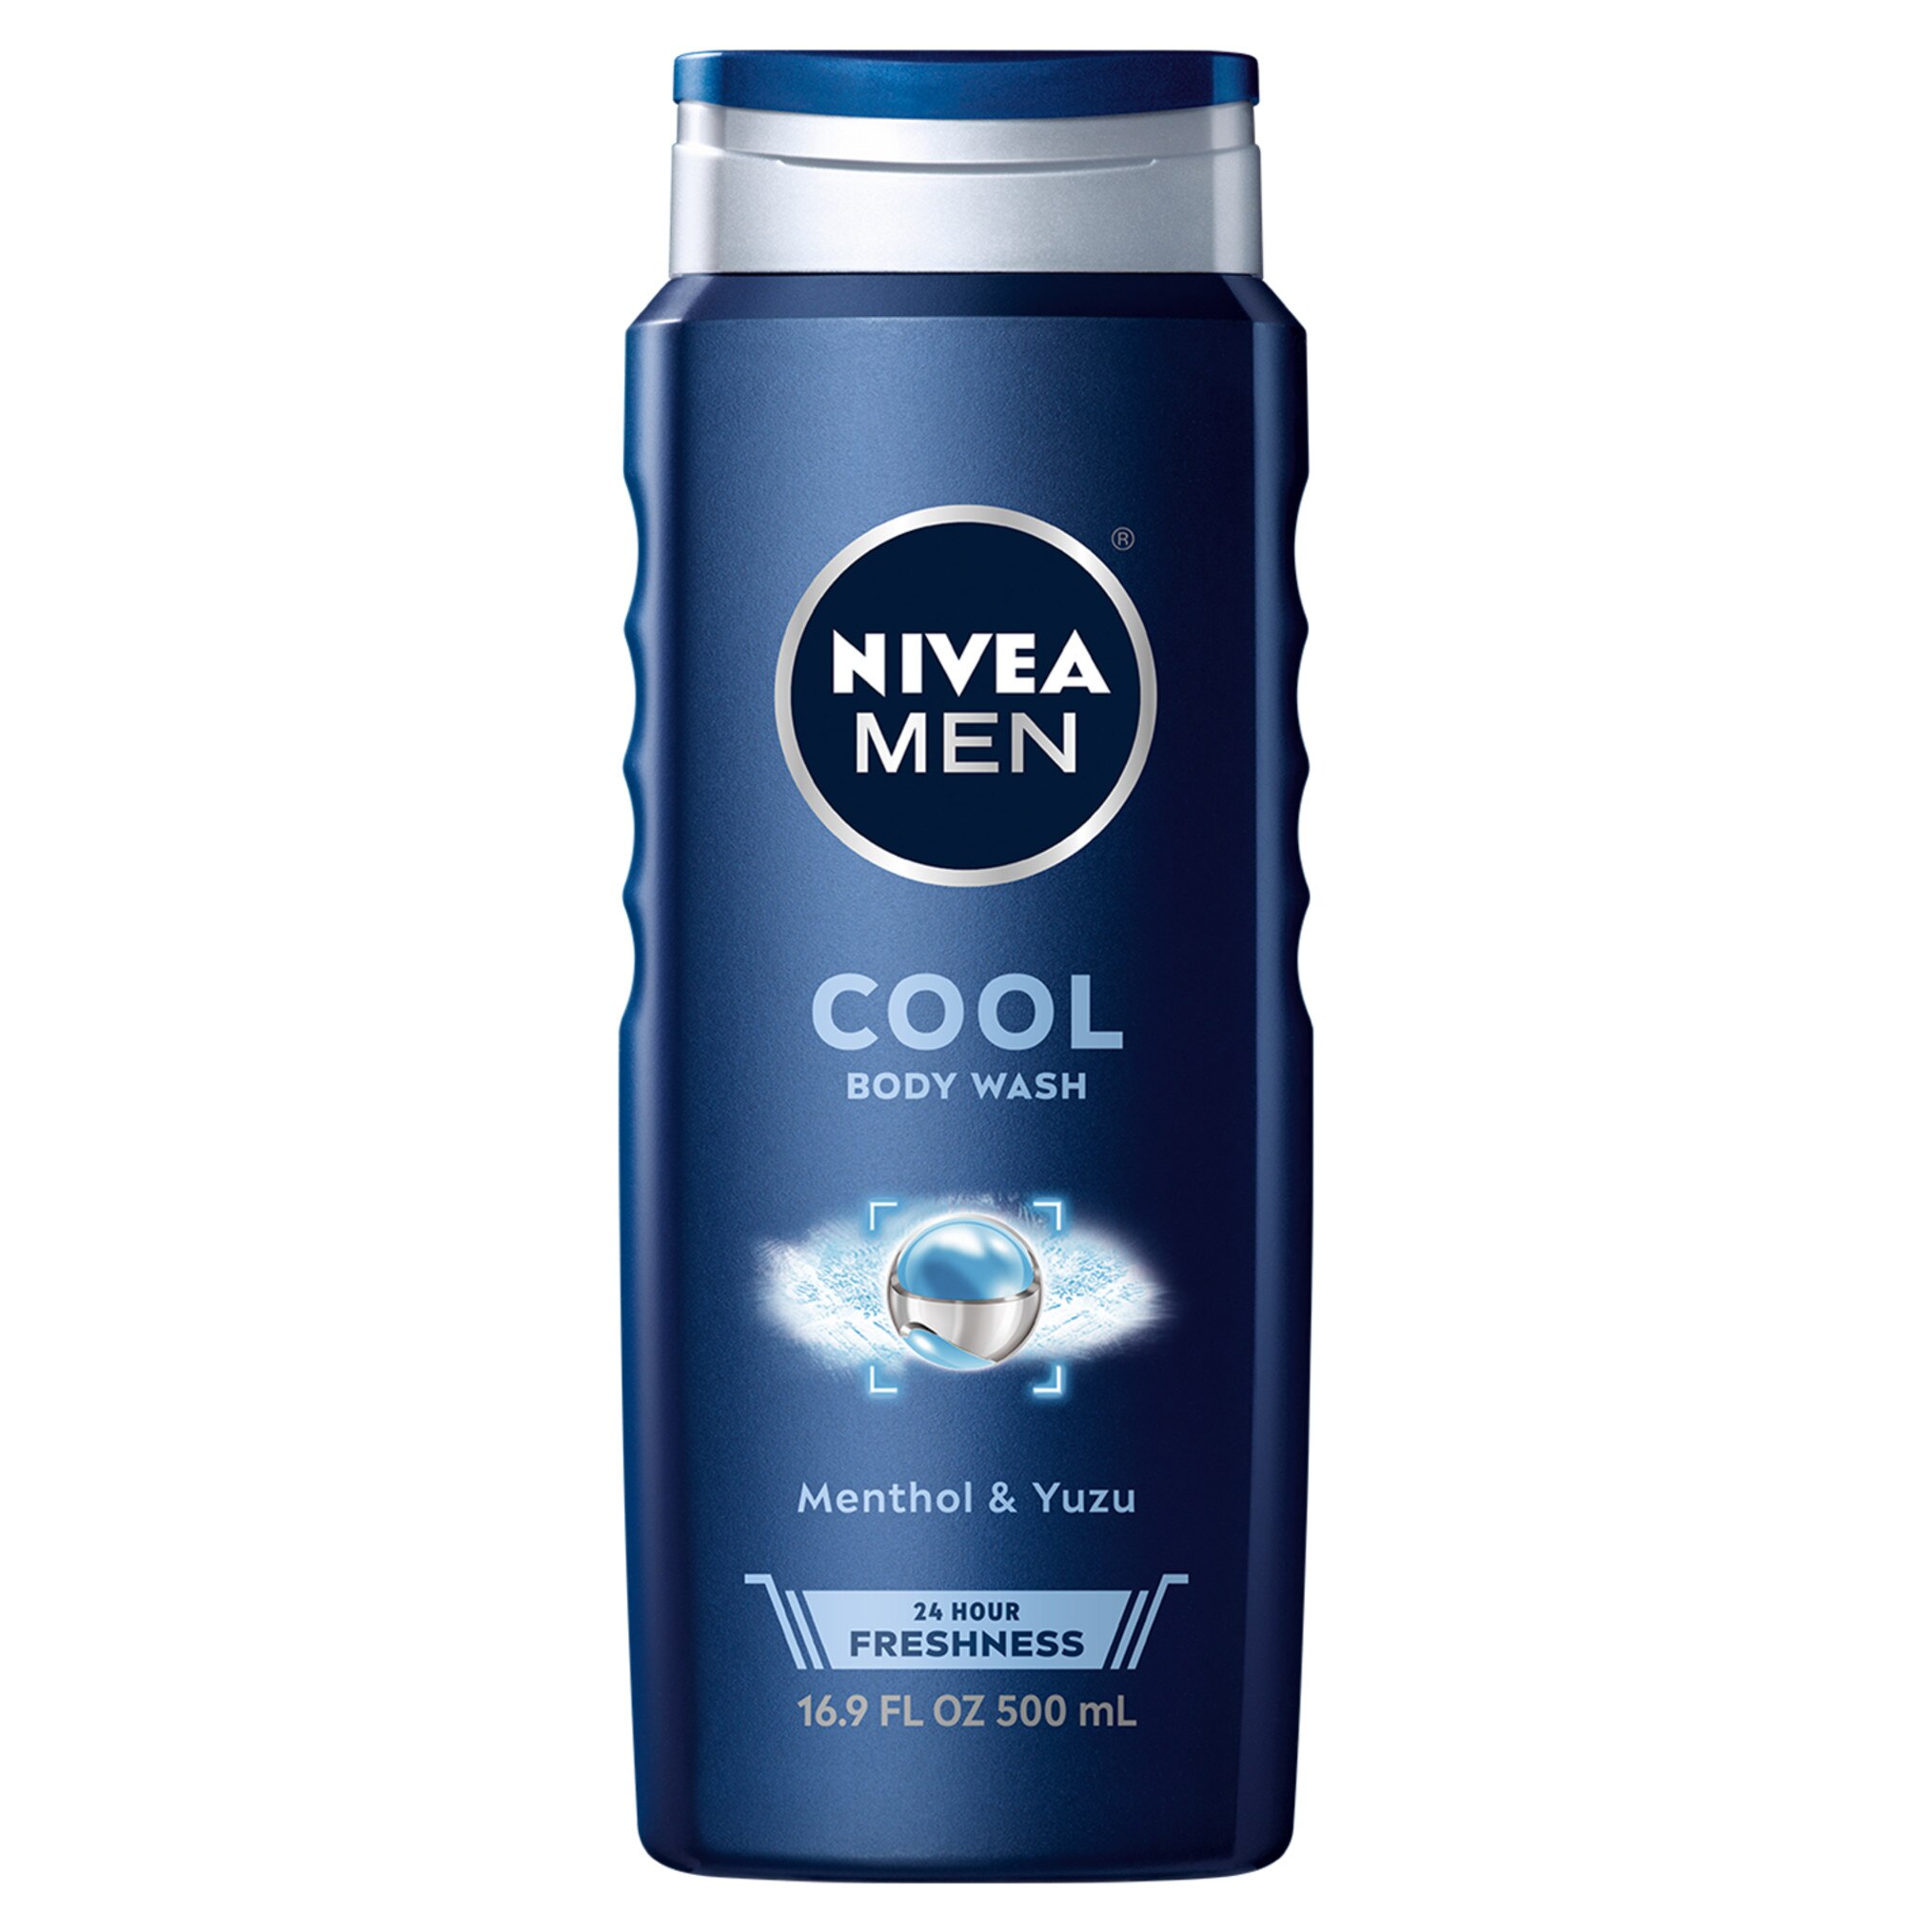 NIVEA Men Cool Body Wash, Menthol & Yuzu, 16.9 oz